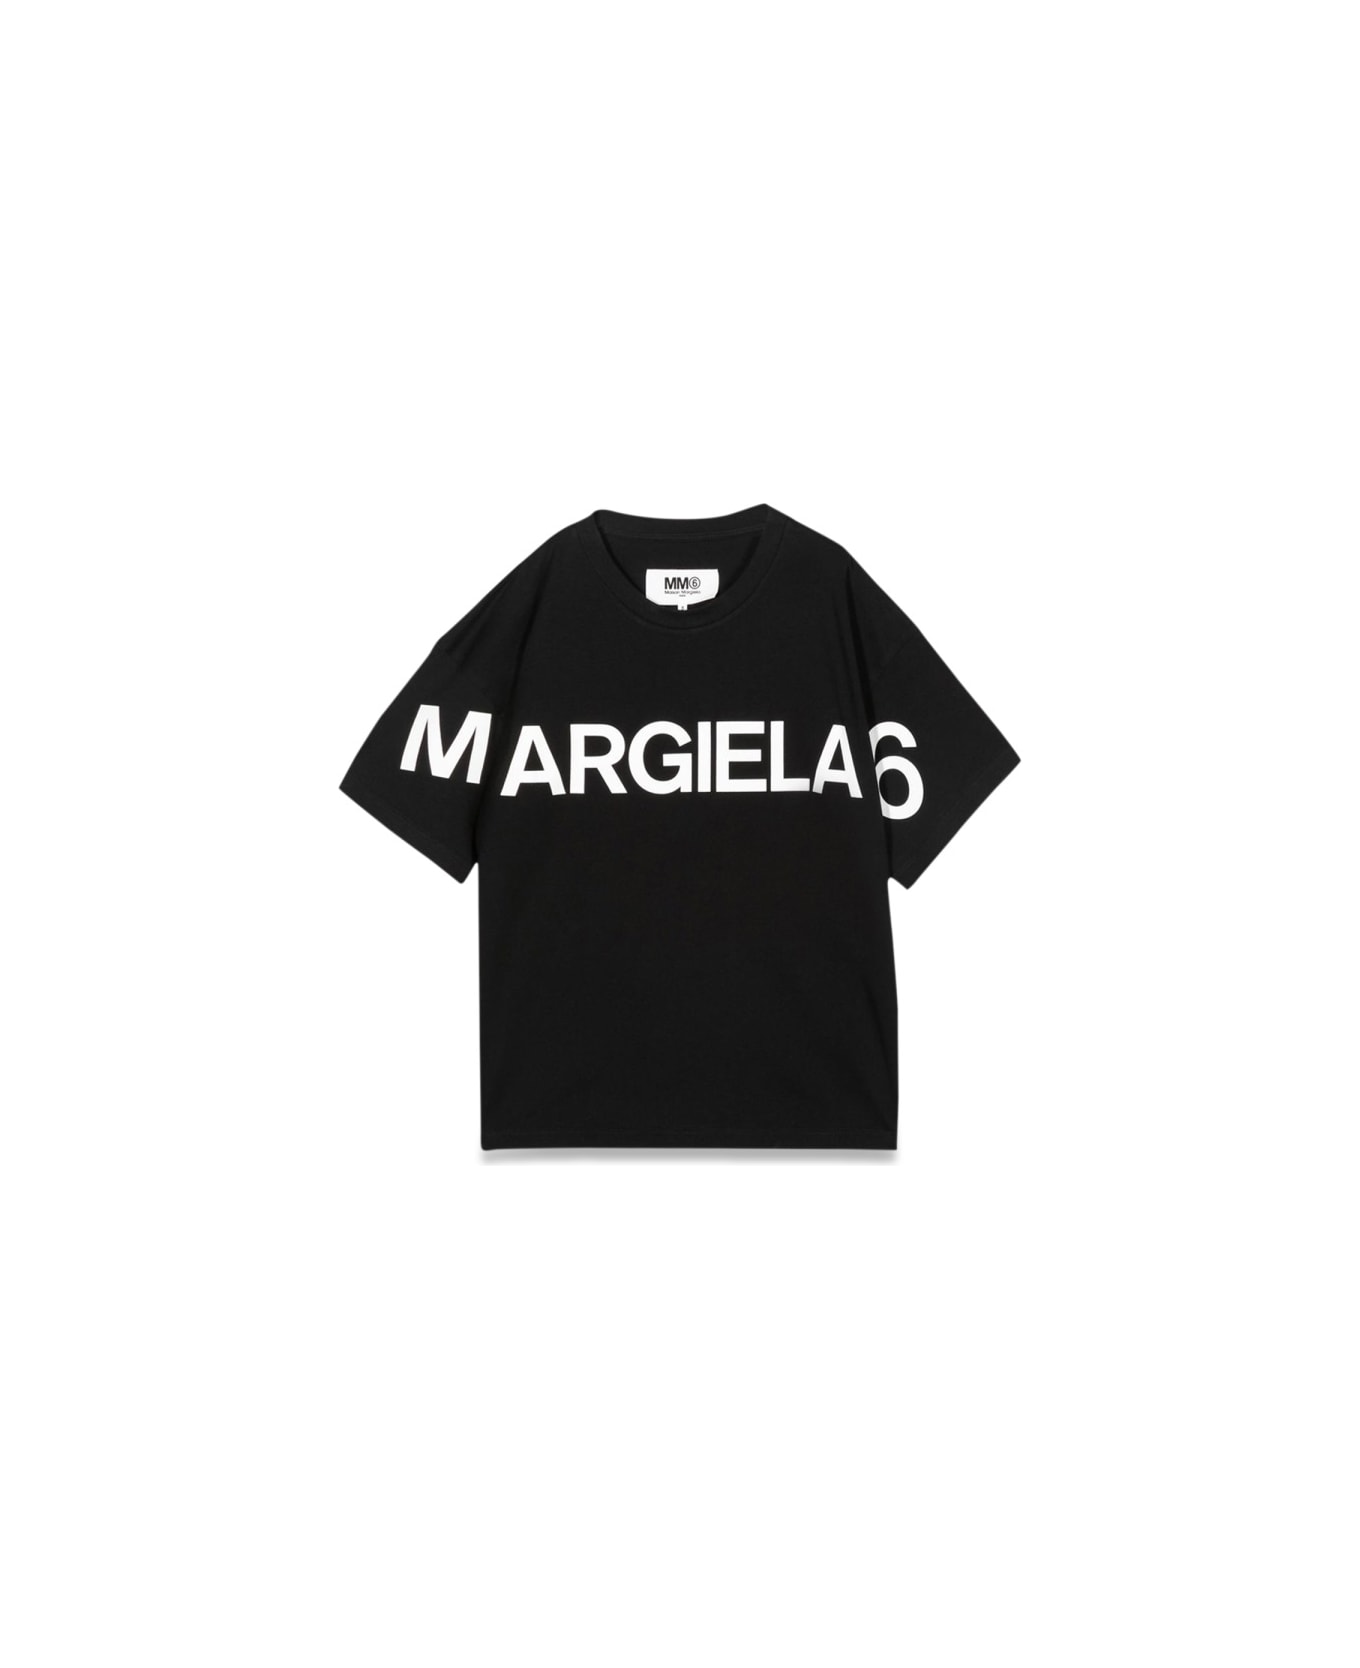 MM6 Maison Margiela T-shirt M/c - BLACK